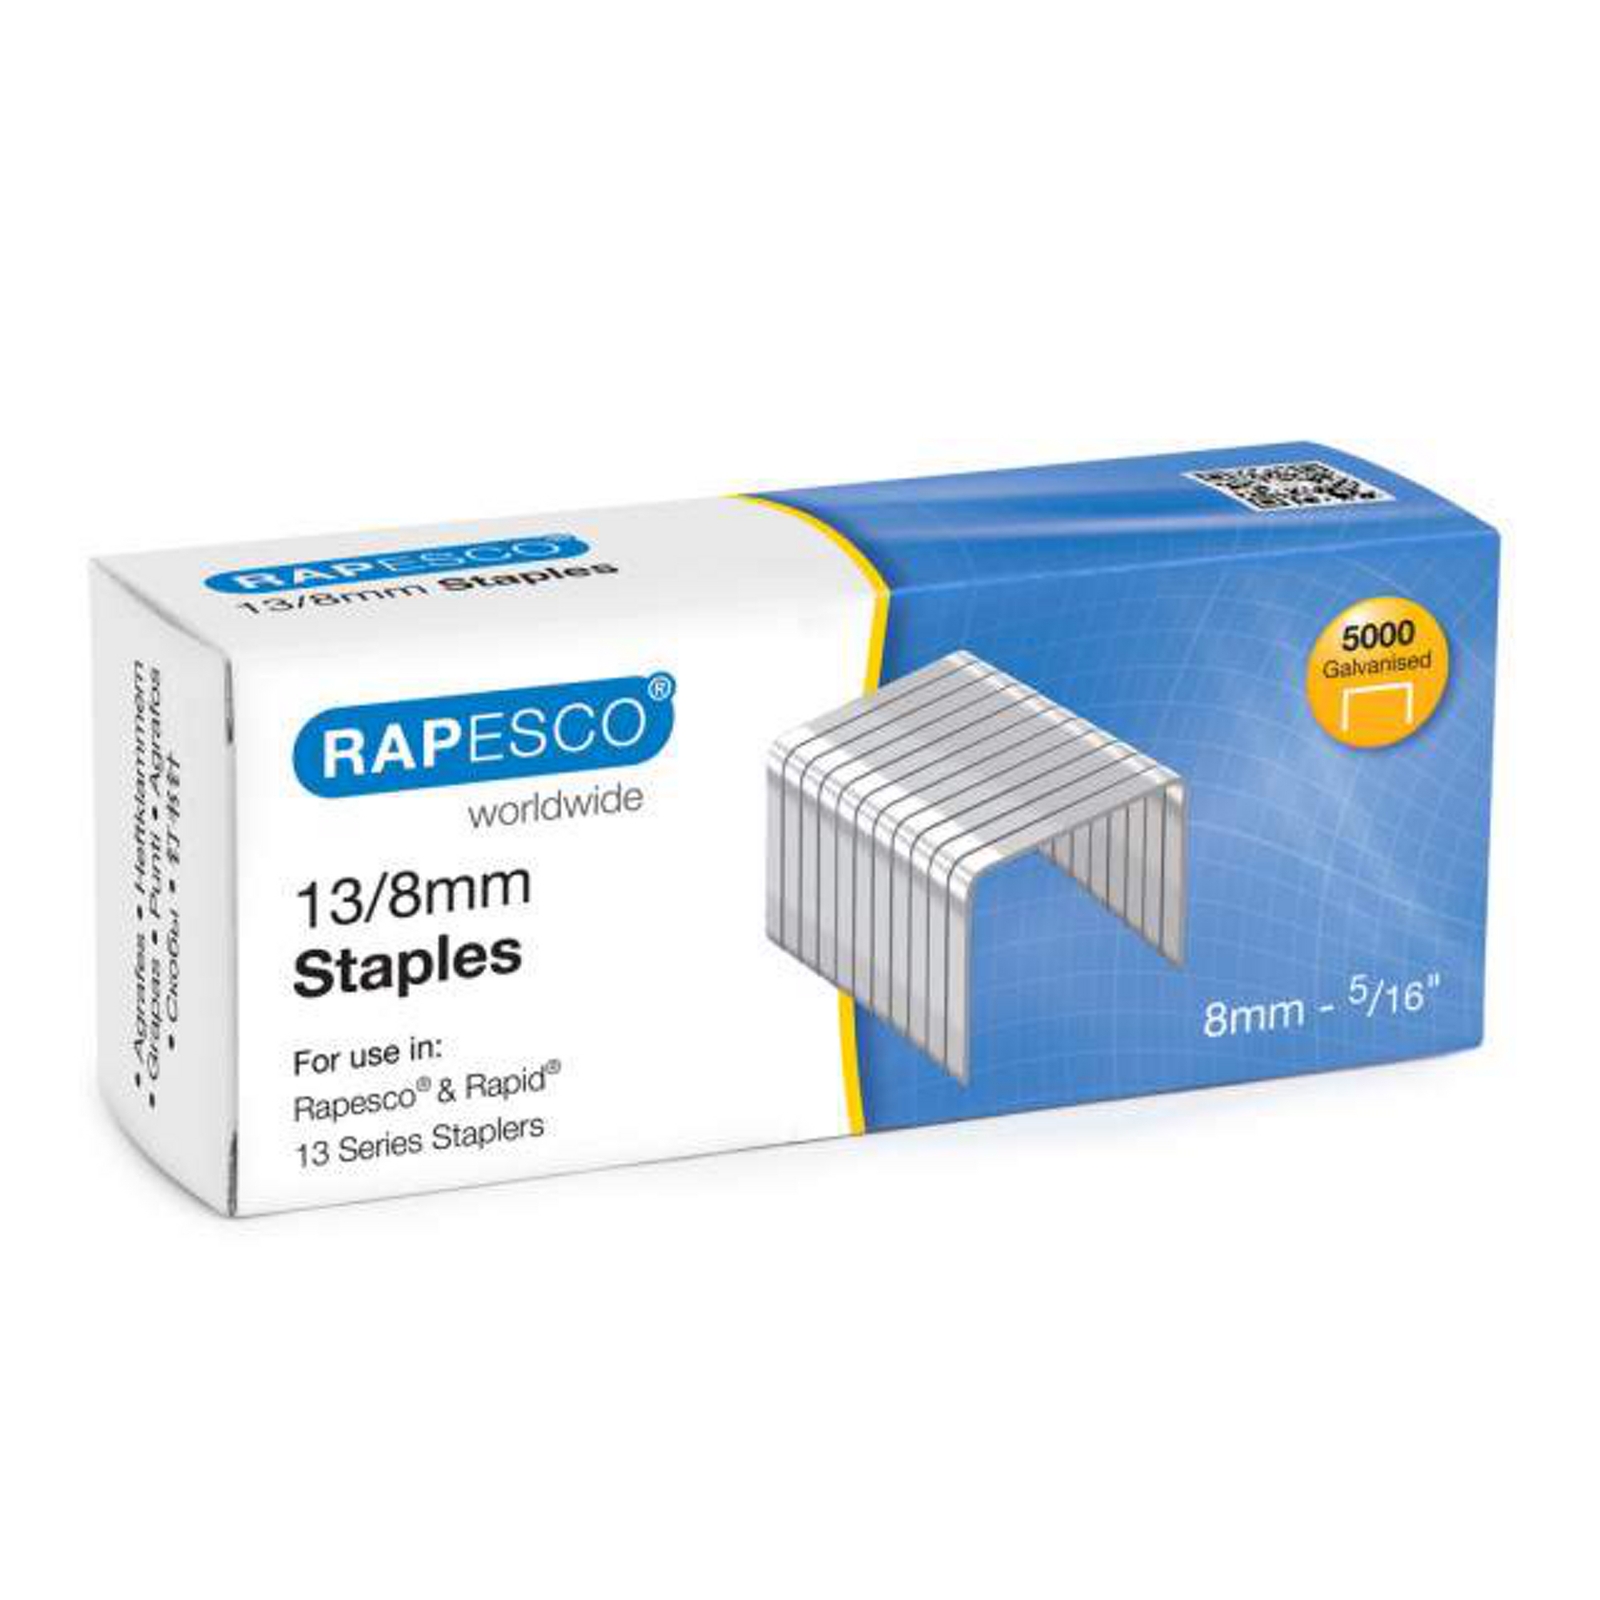 Rapesco Staples13/8mm - Pack of 5000